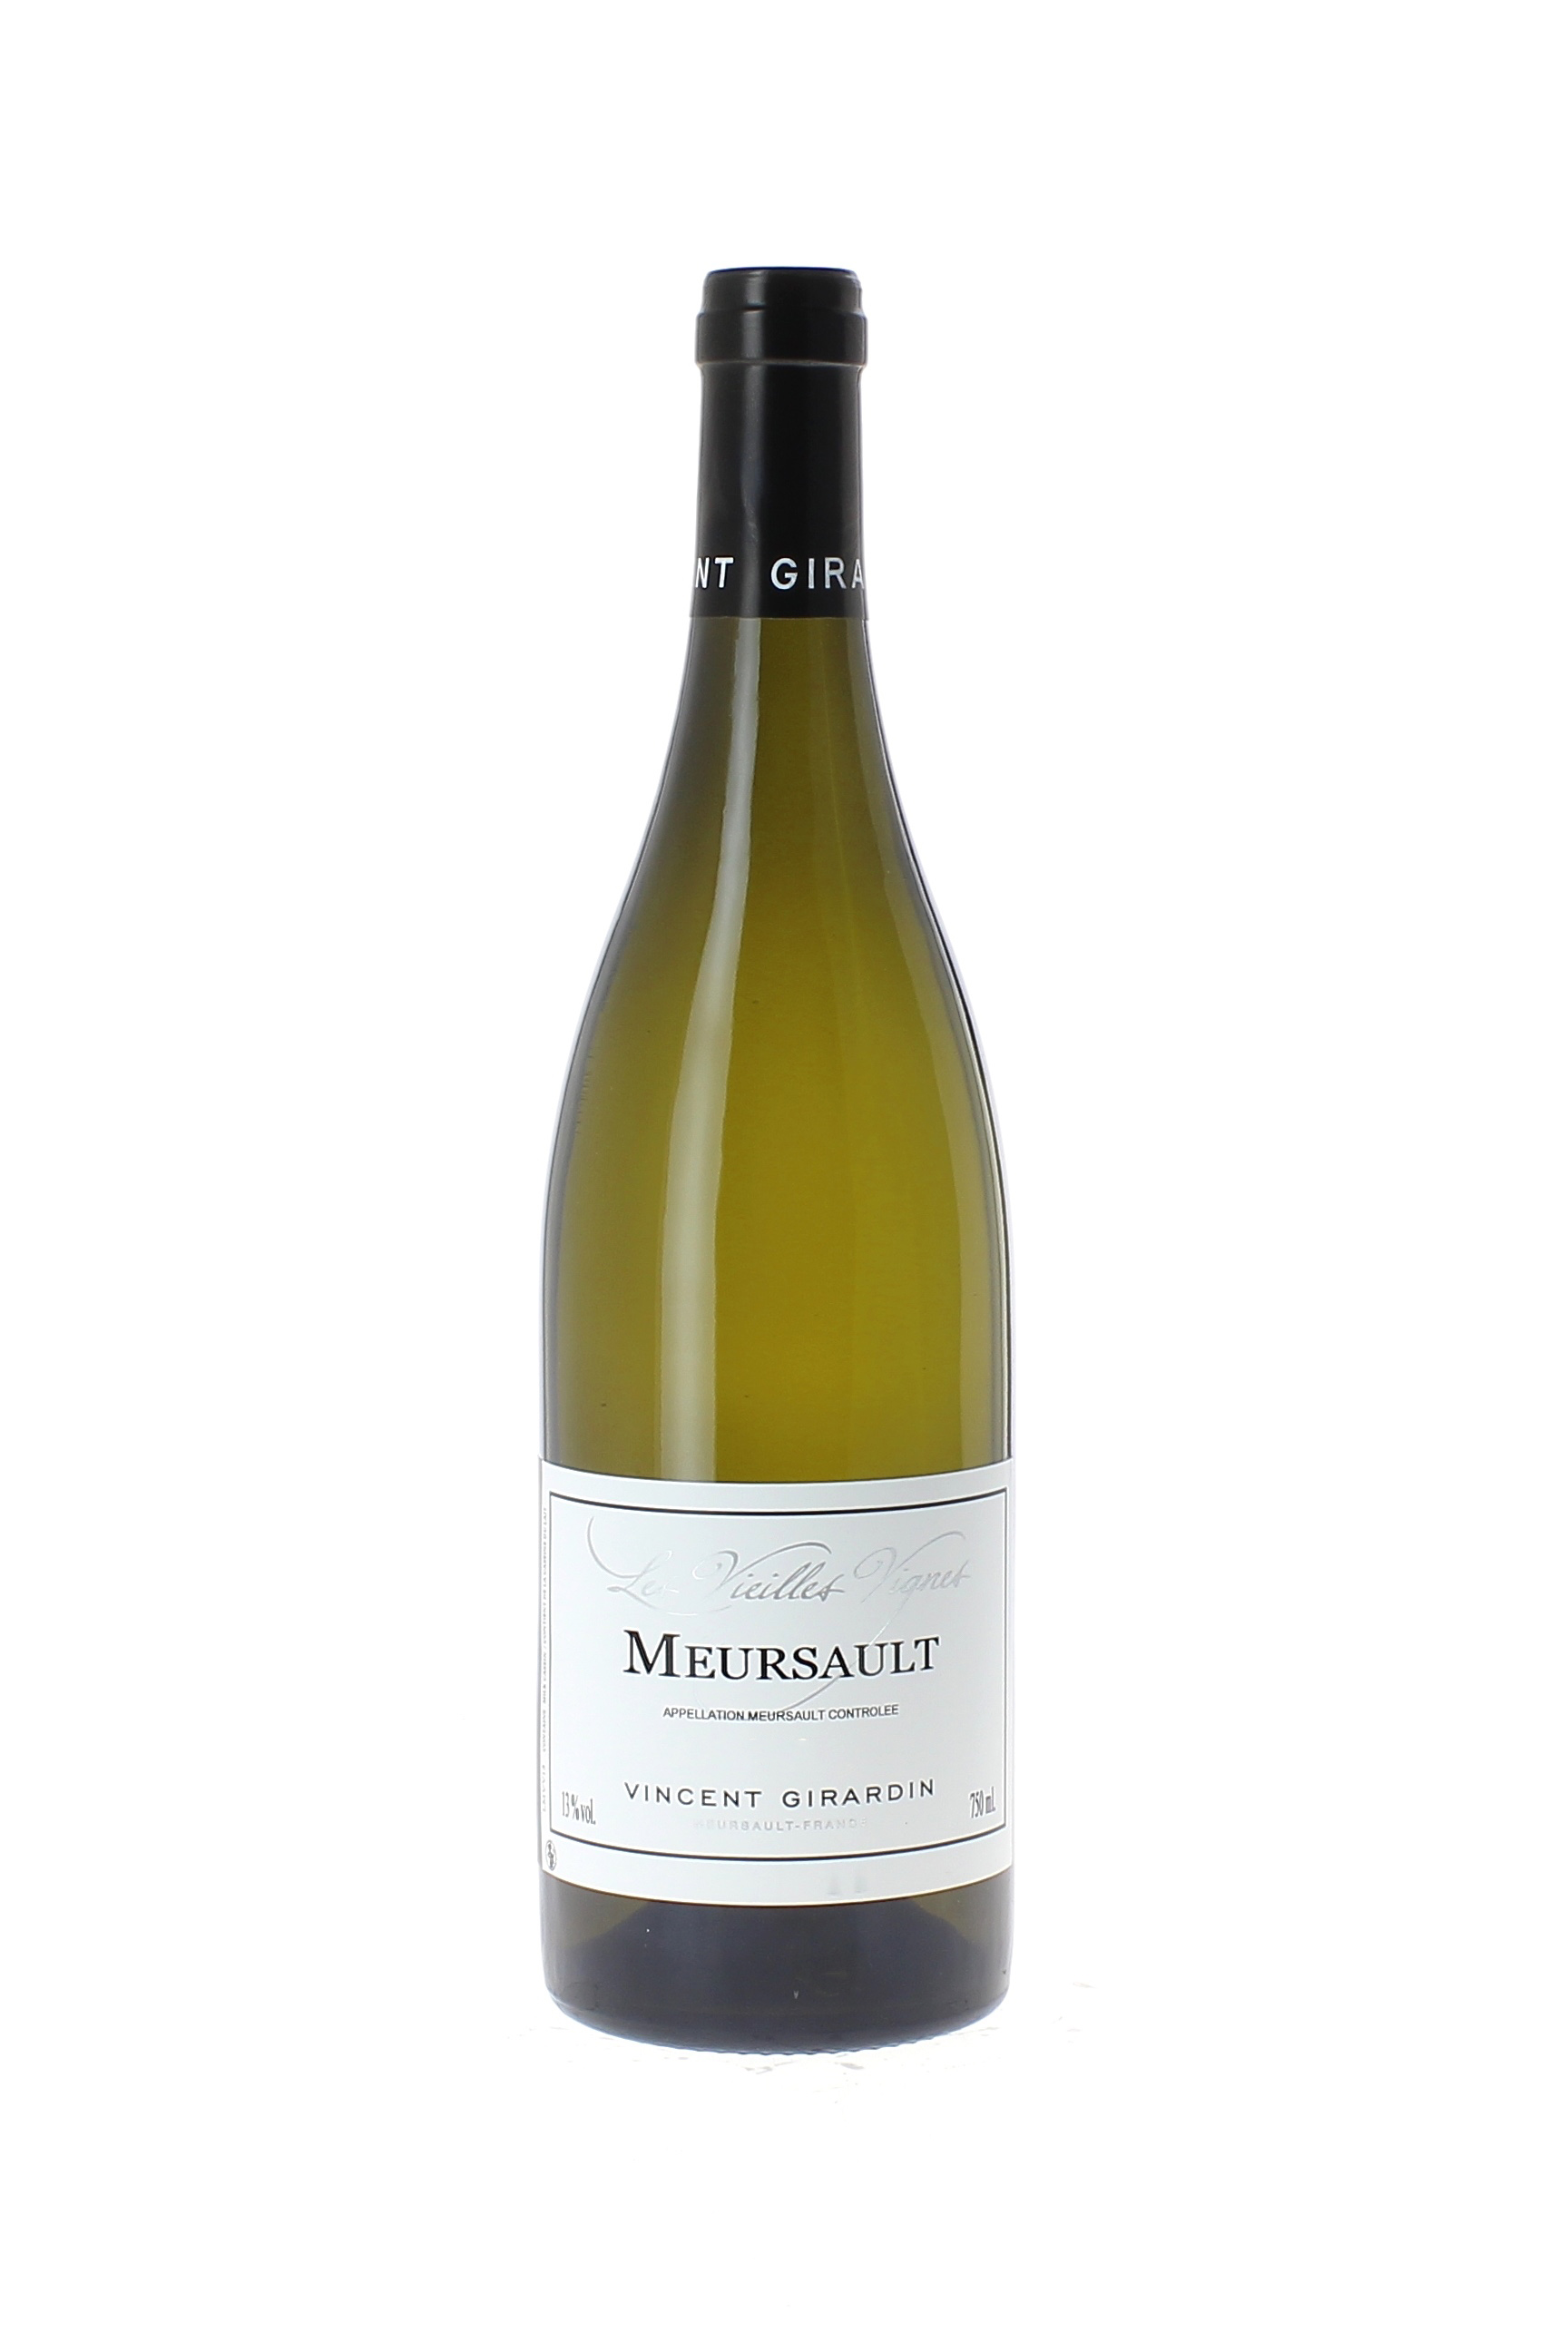 Meursault vieilles vignes 2015 Domaine GIRARDIN Vincent, Bourgogne blanc